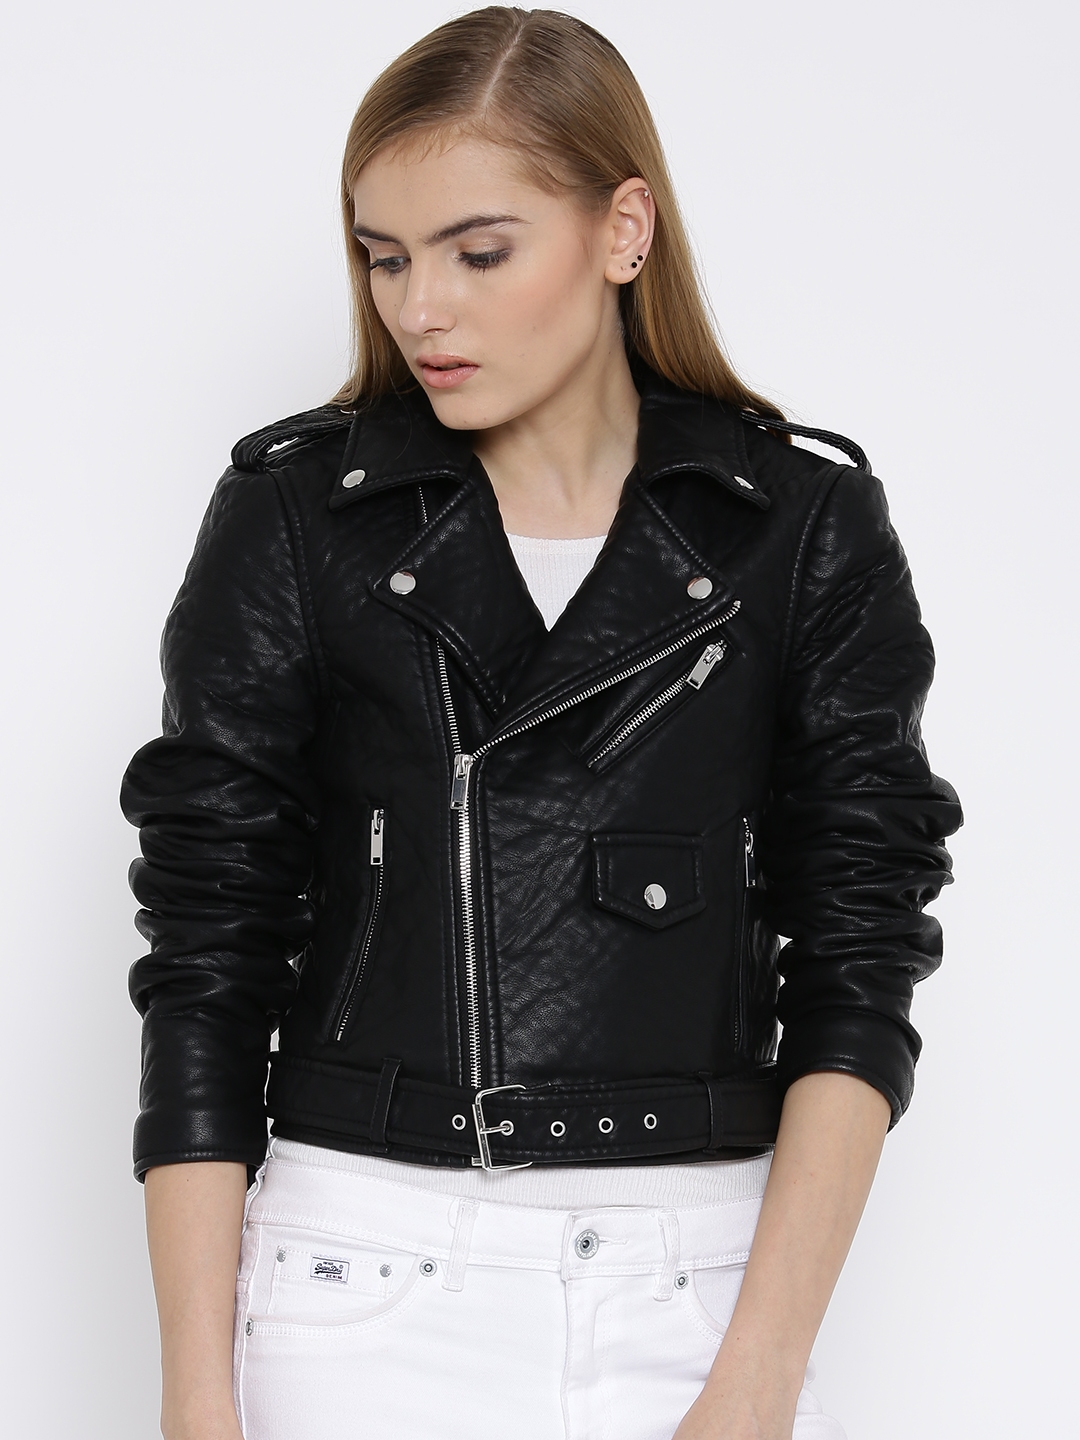 Buy Vero Moda Faux Leather Biker Jacket - Jackets Women | Myntra